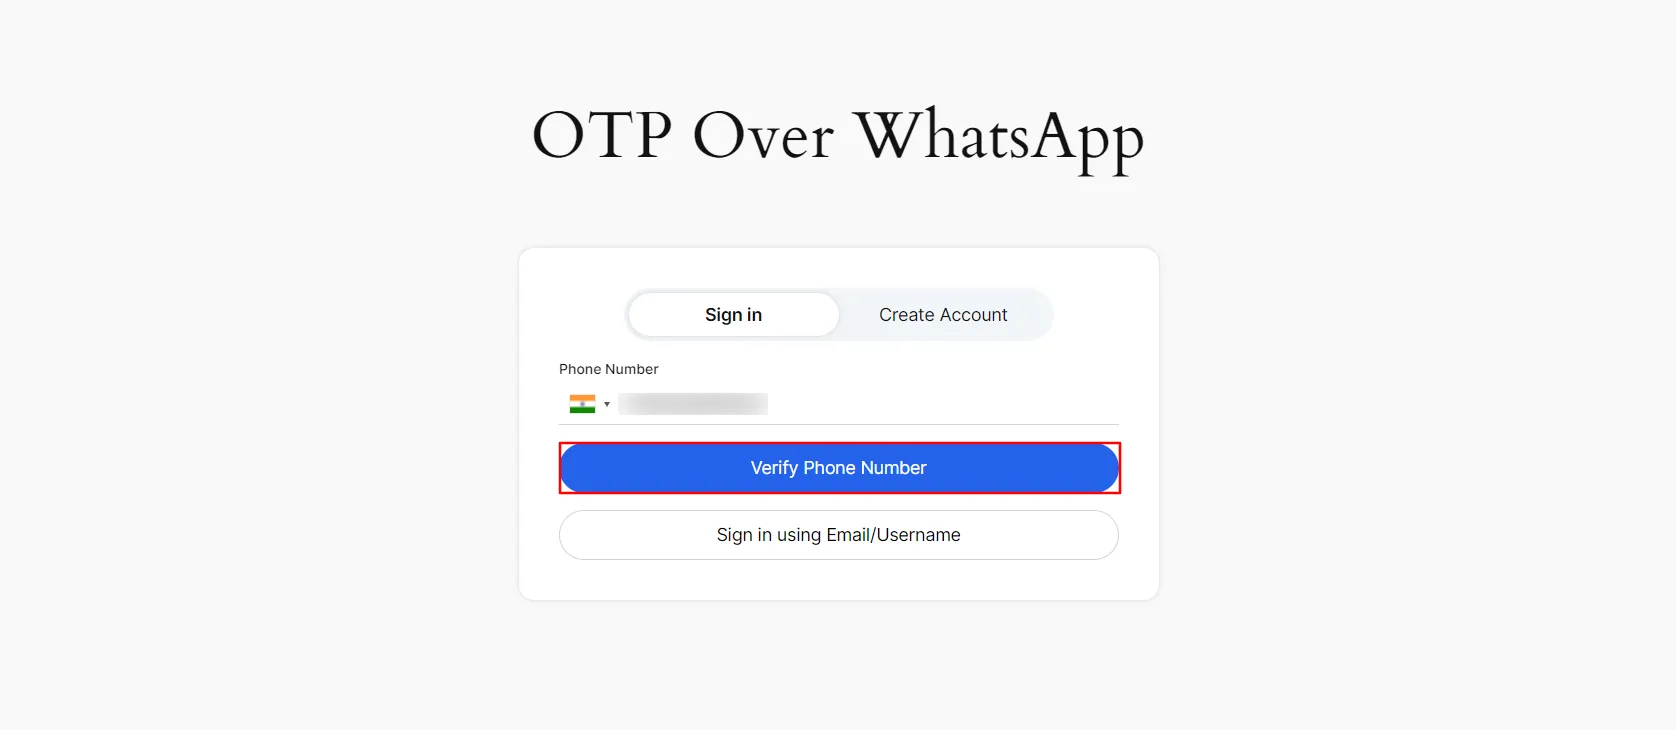 Iniciar sesión en WhatsApp con OTP: ingrese el número de teléfono